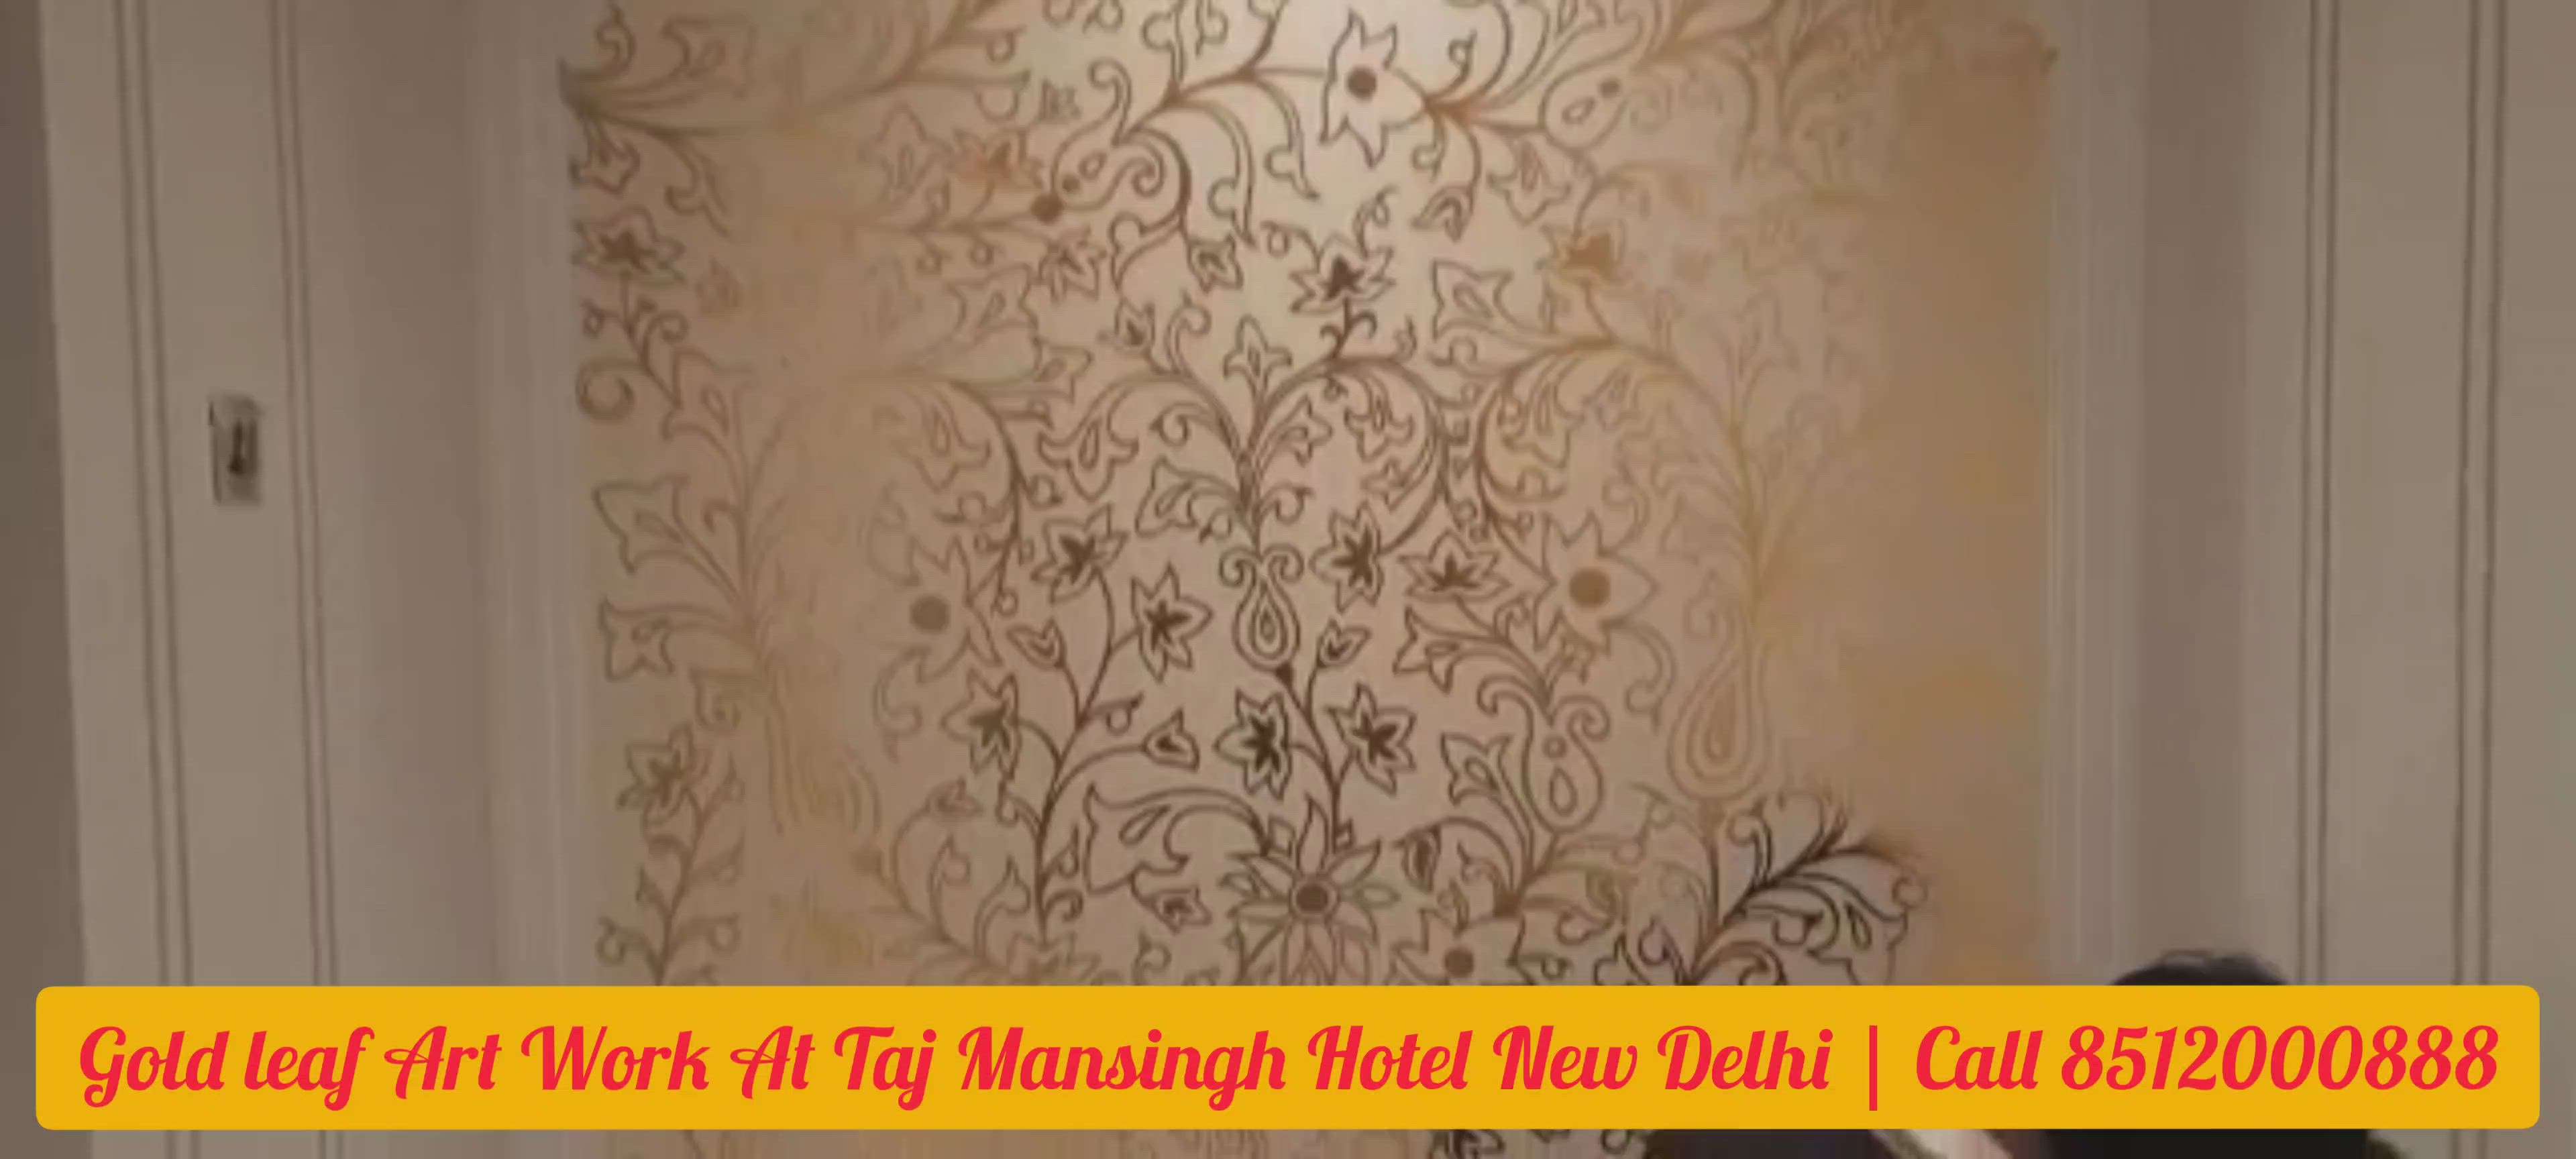 Goldl Leaf Painting, Gold Leaf Art Work at Taj Mansingh Hotel New Delhi. #goldleaf #goldleafpainting #goldleafartwork